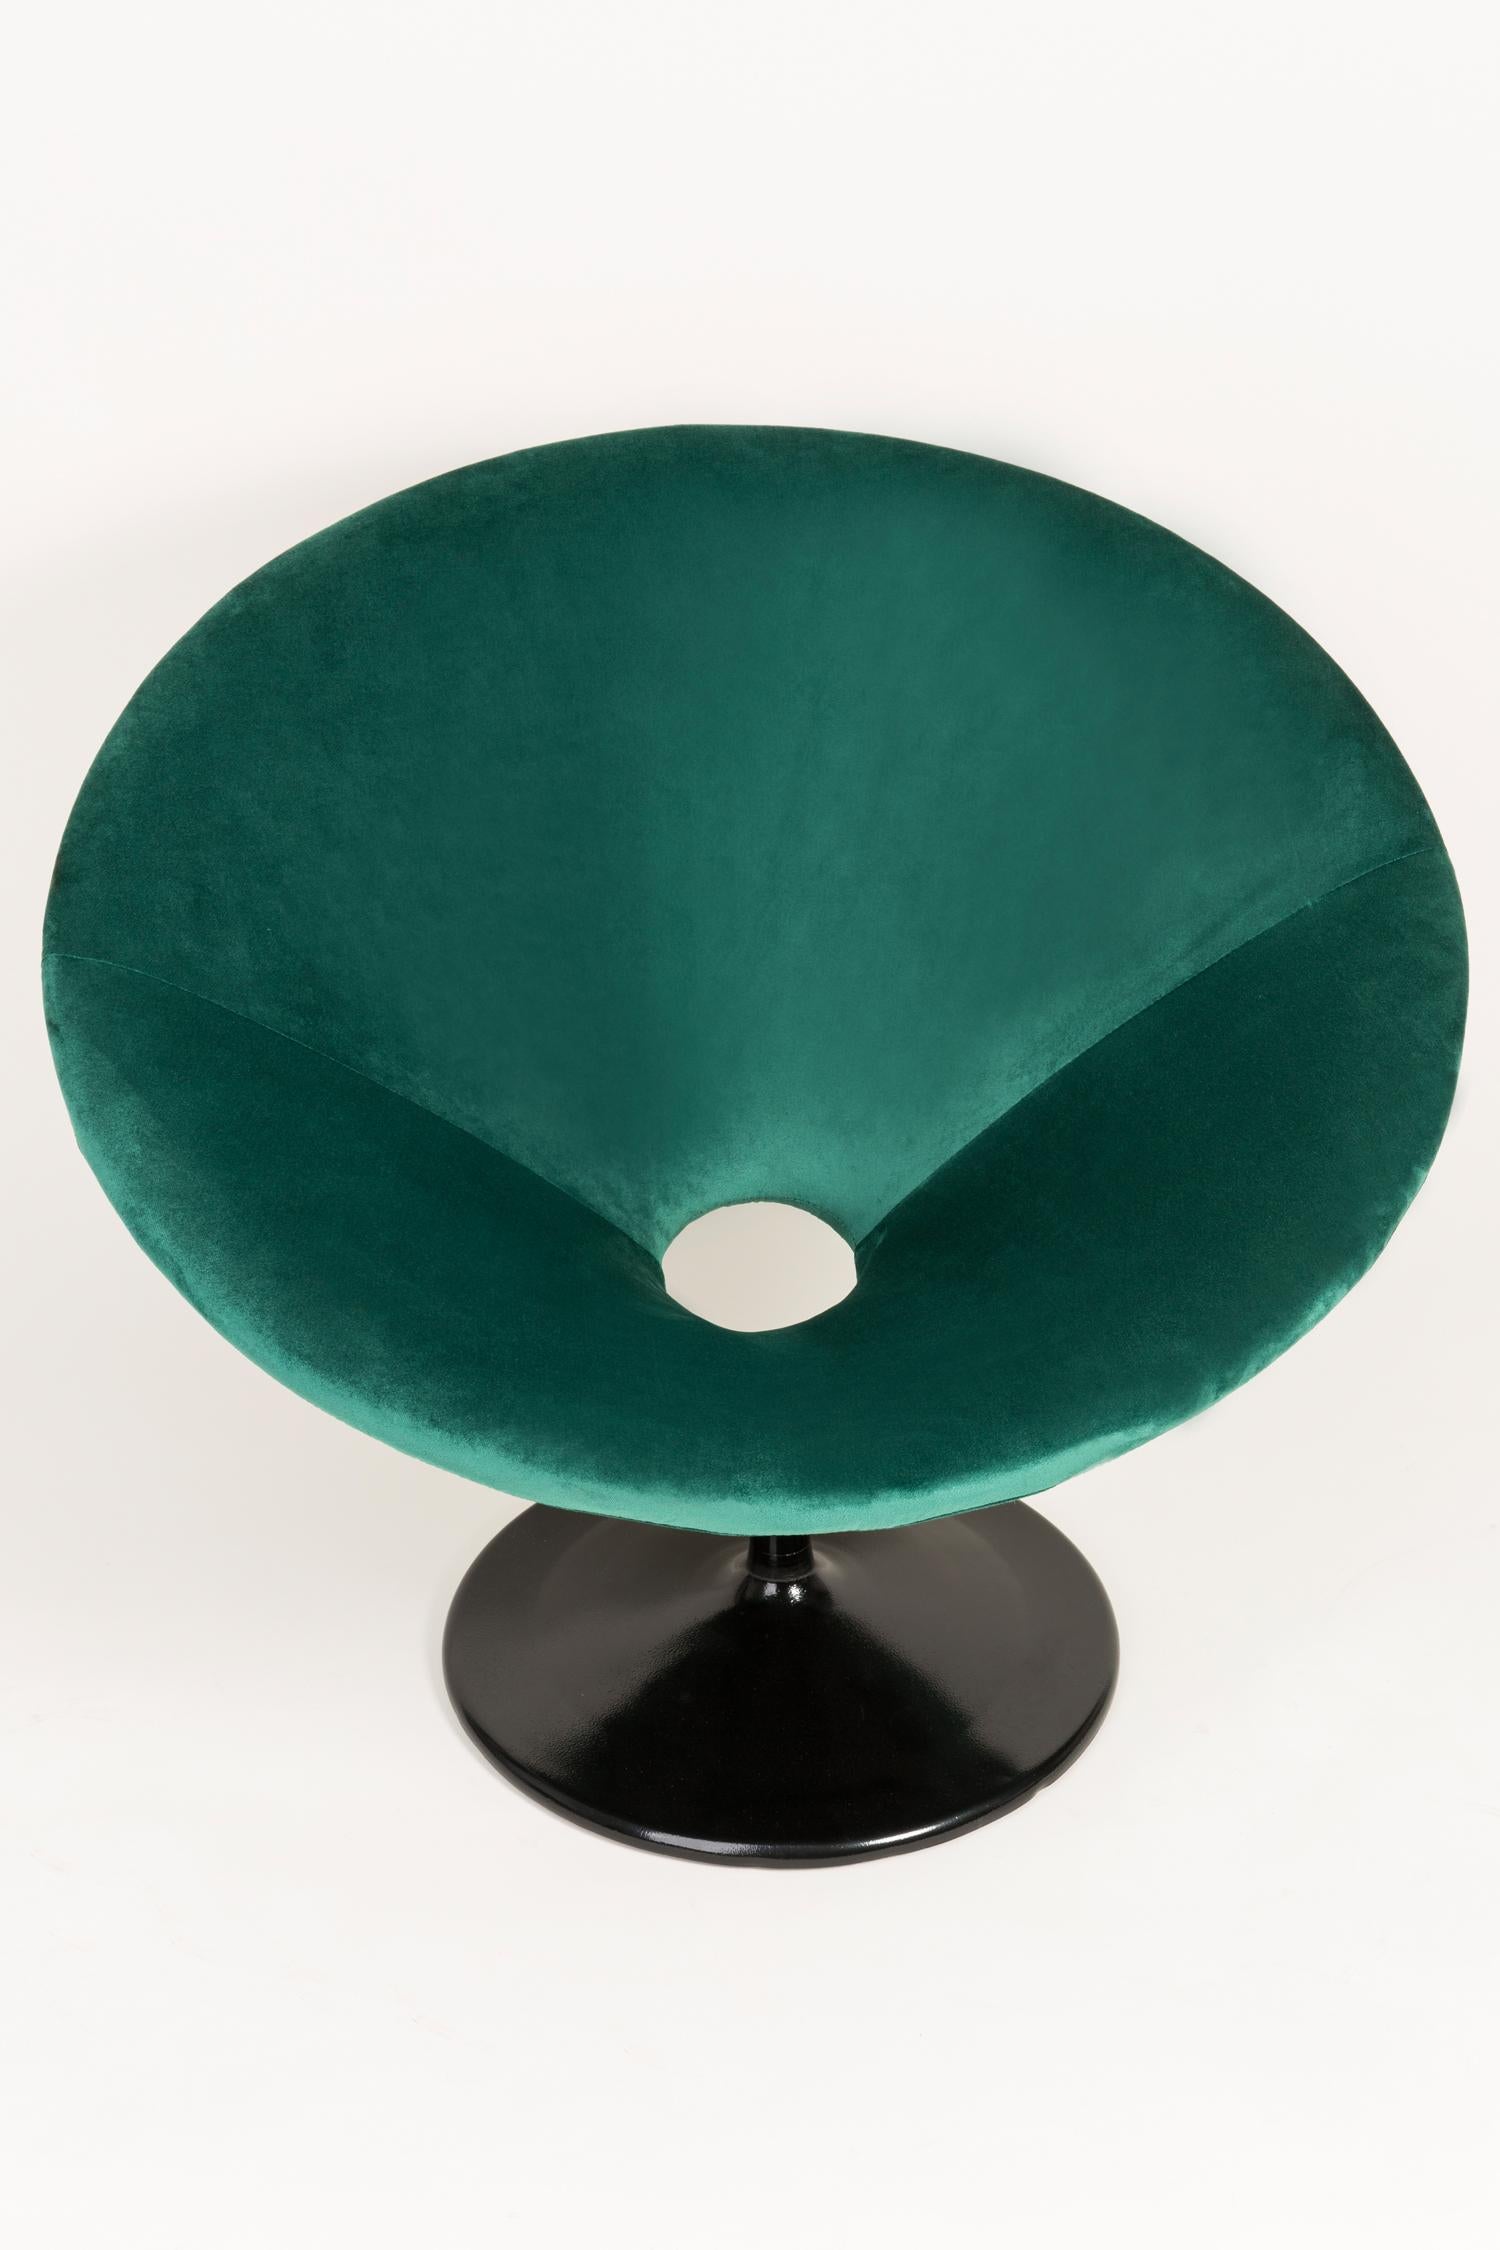 dark green swivel chair